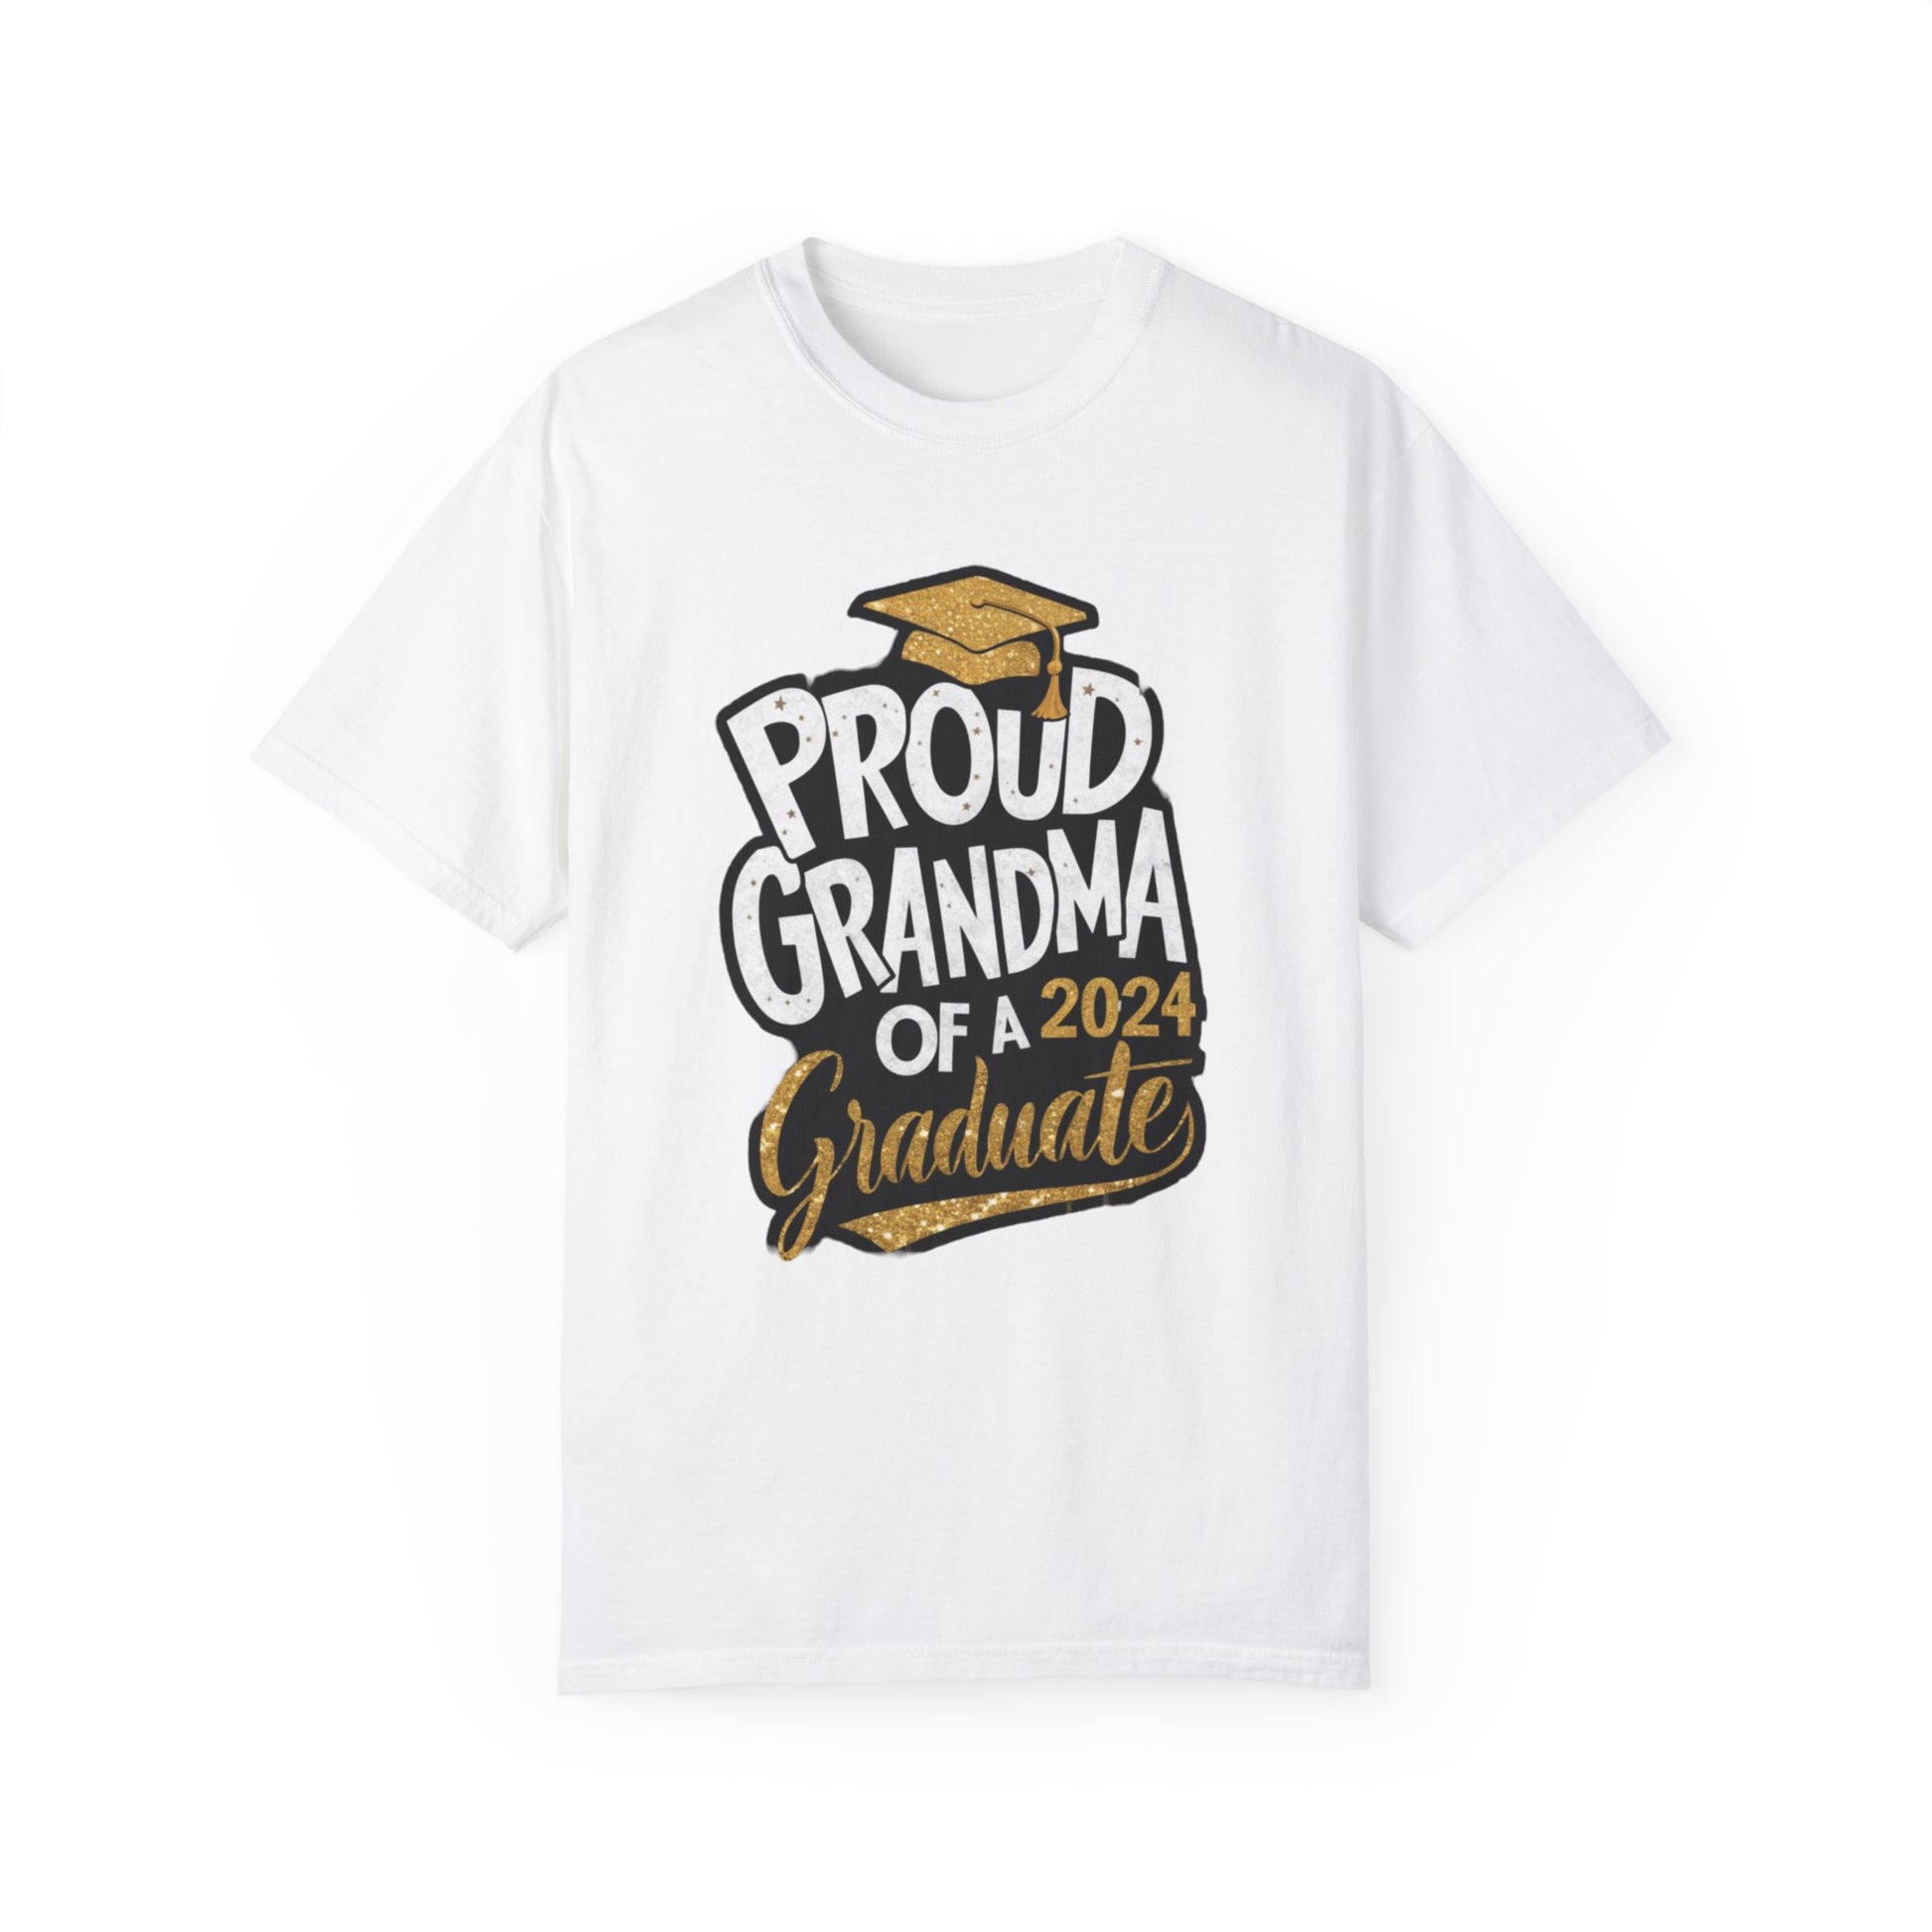 Proud of Grandma 2024 Graduate Unisex Garment-dyed T-shirt Cotton Funny Humorous Graphic Soft Premium Unisex Men Women White T-shirt Birthday Gift-3